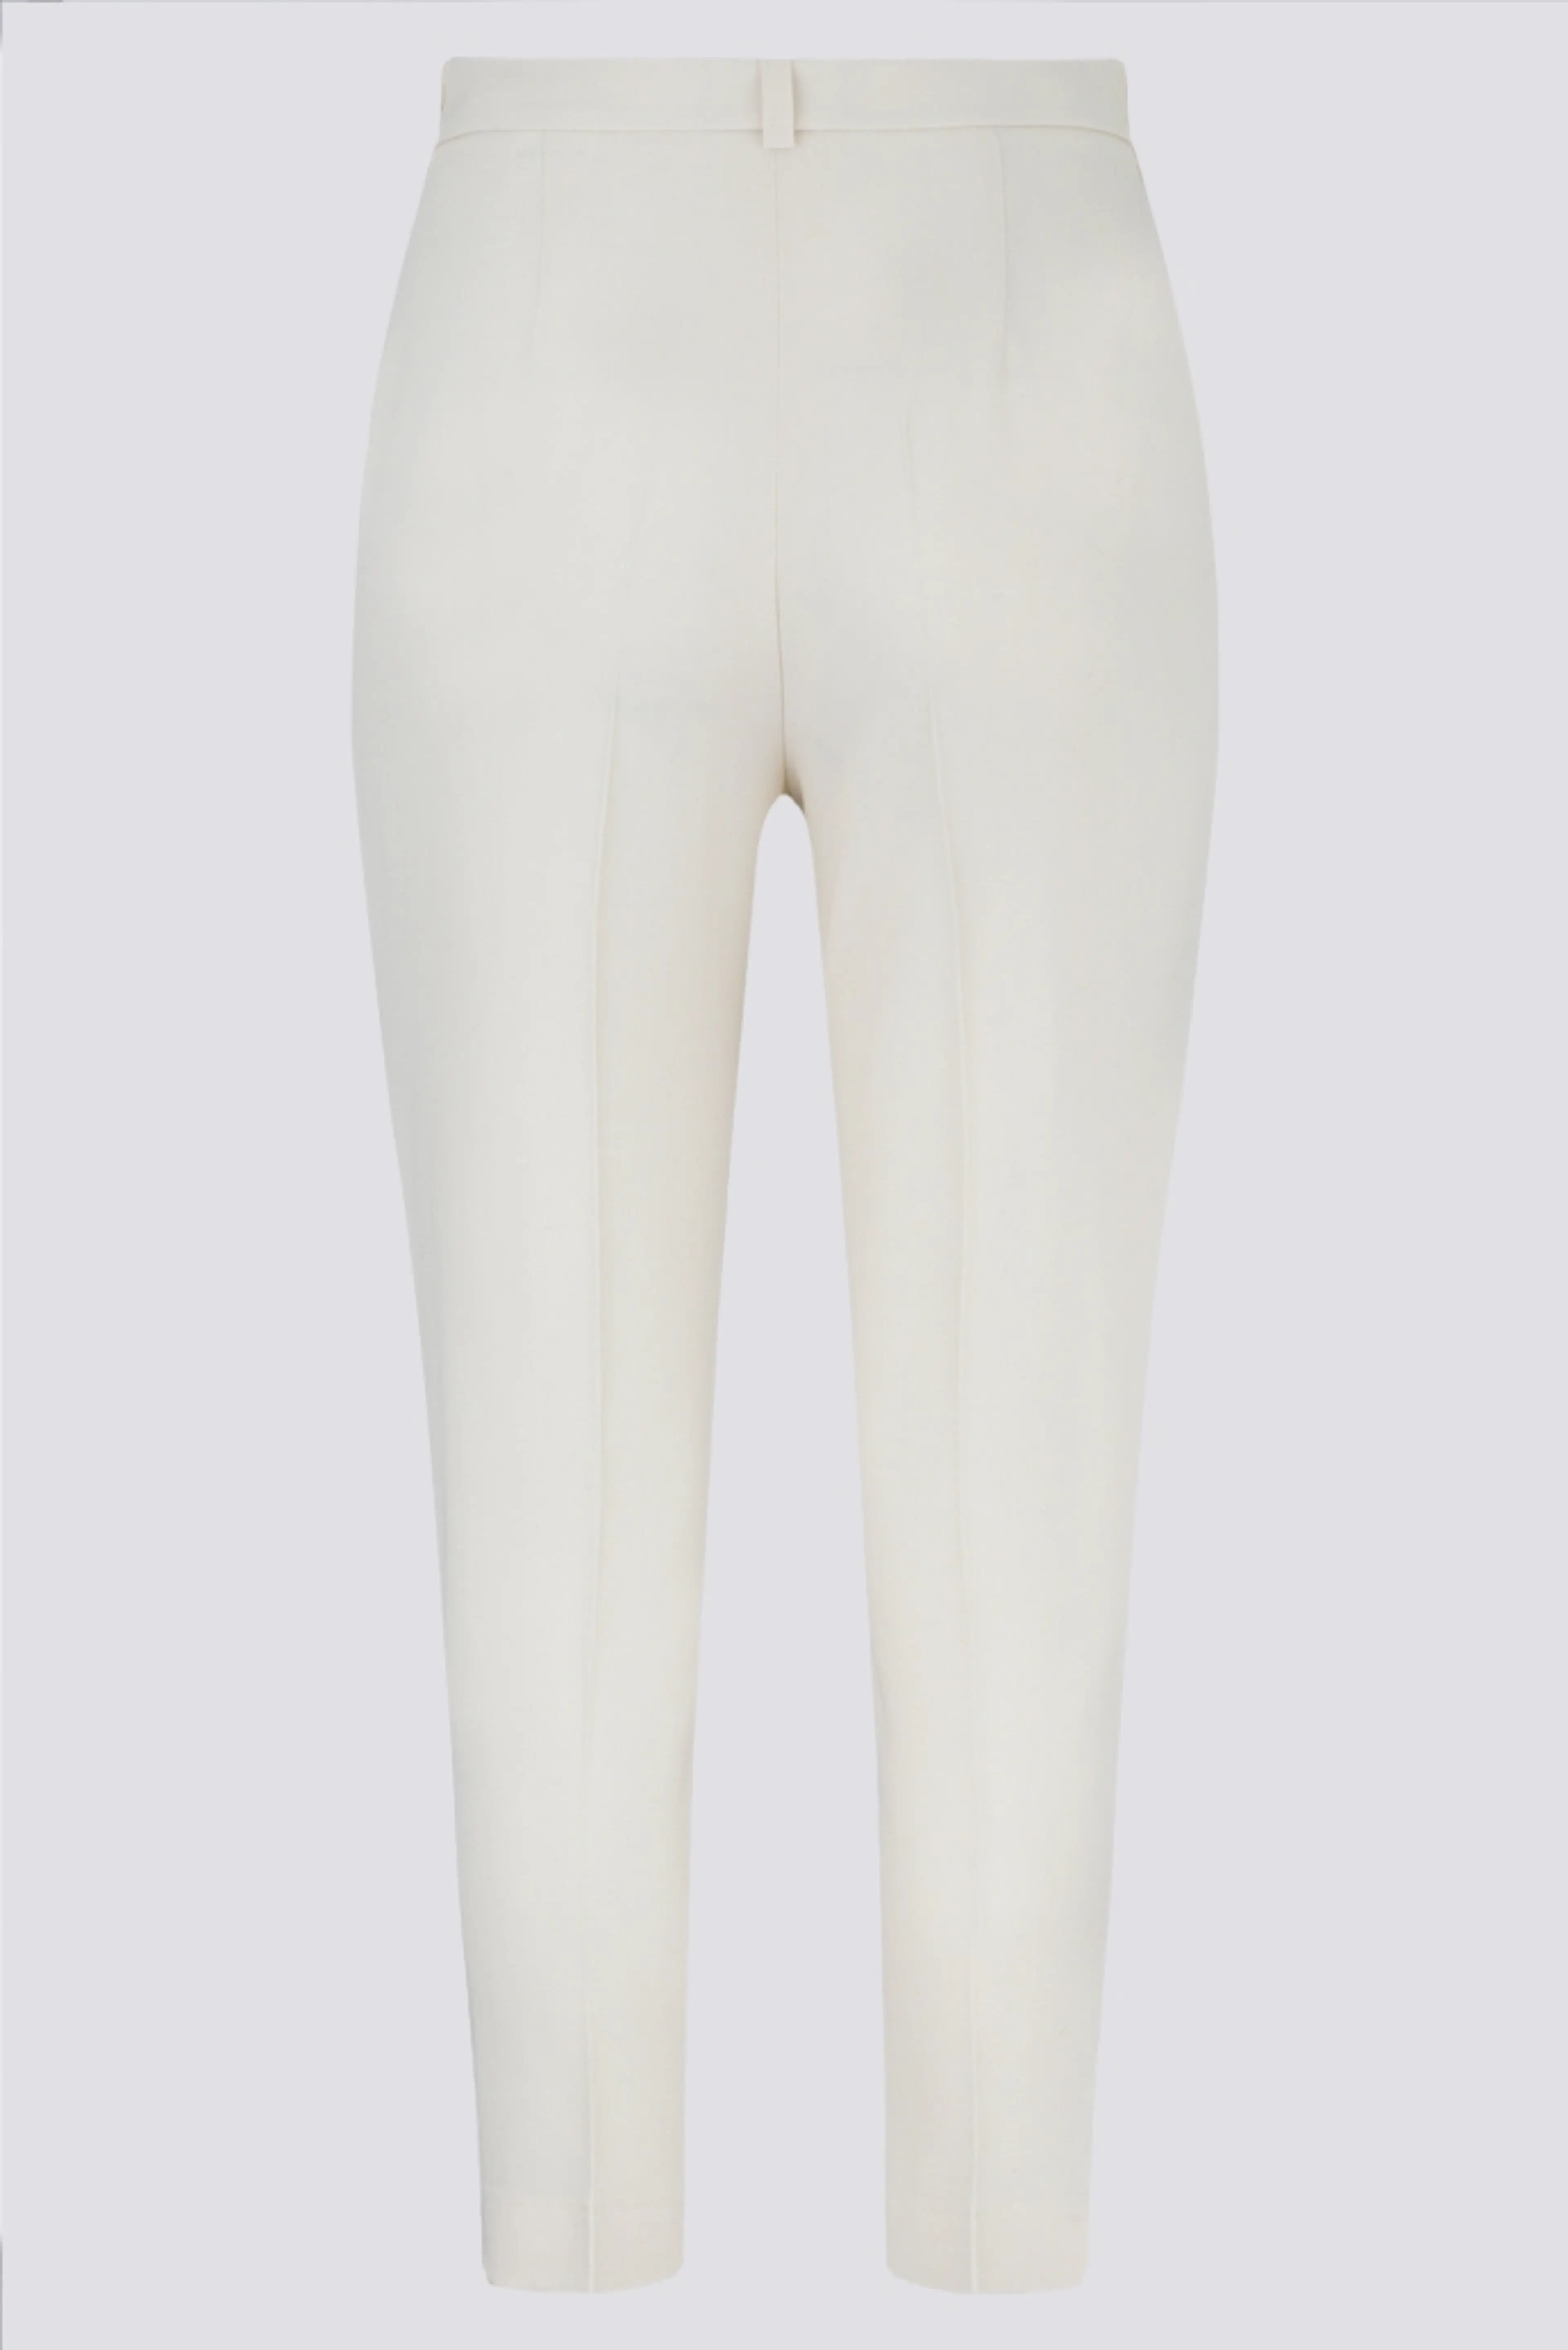 Панталон бял, от коприна 46